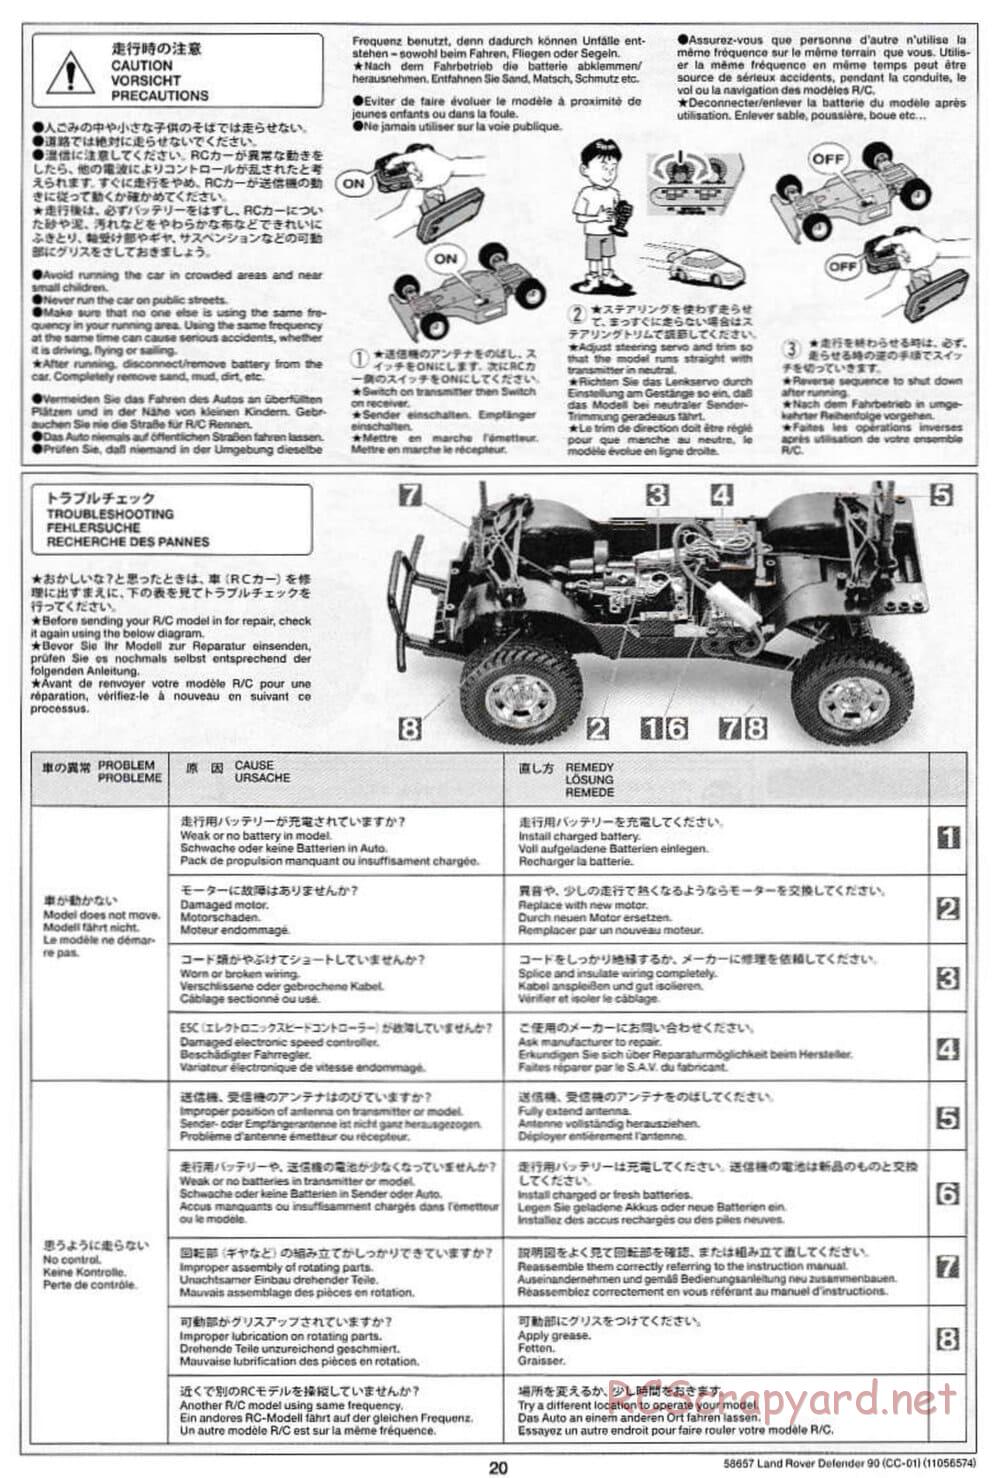 Tamiya - Land Rover Defender 90 - CC-01 Chassis - Manual - Page 20